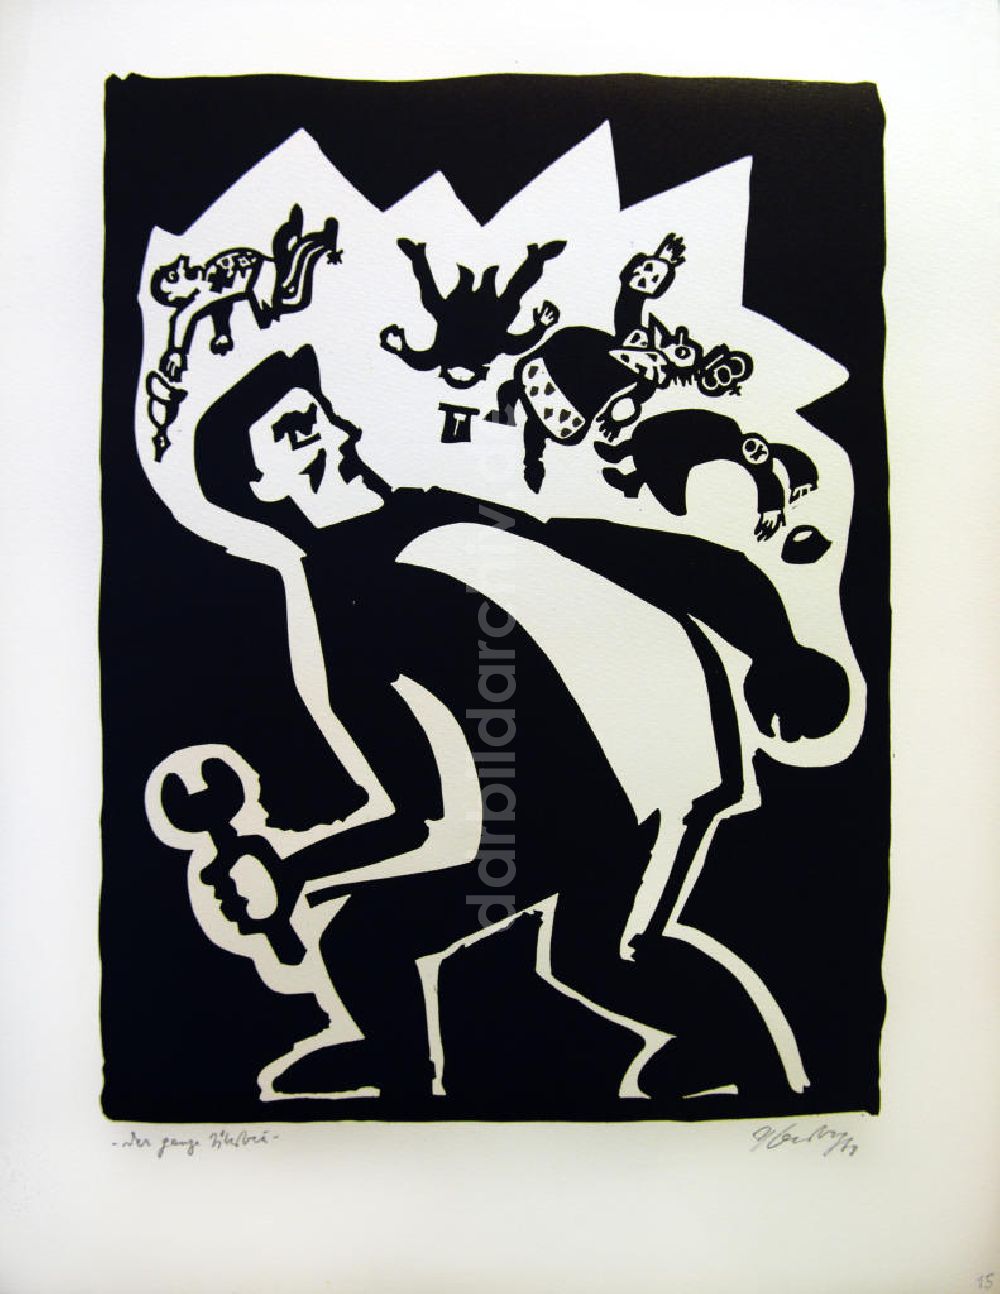 Berlin: Grafik von Herbert Sandberg Motiv 19 aus dem Zyklus Bilder zum Kommunistischen Manifest aus dem Jahr 1968